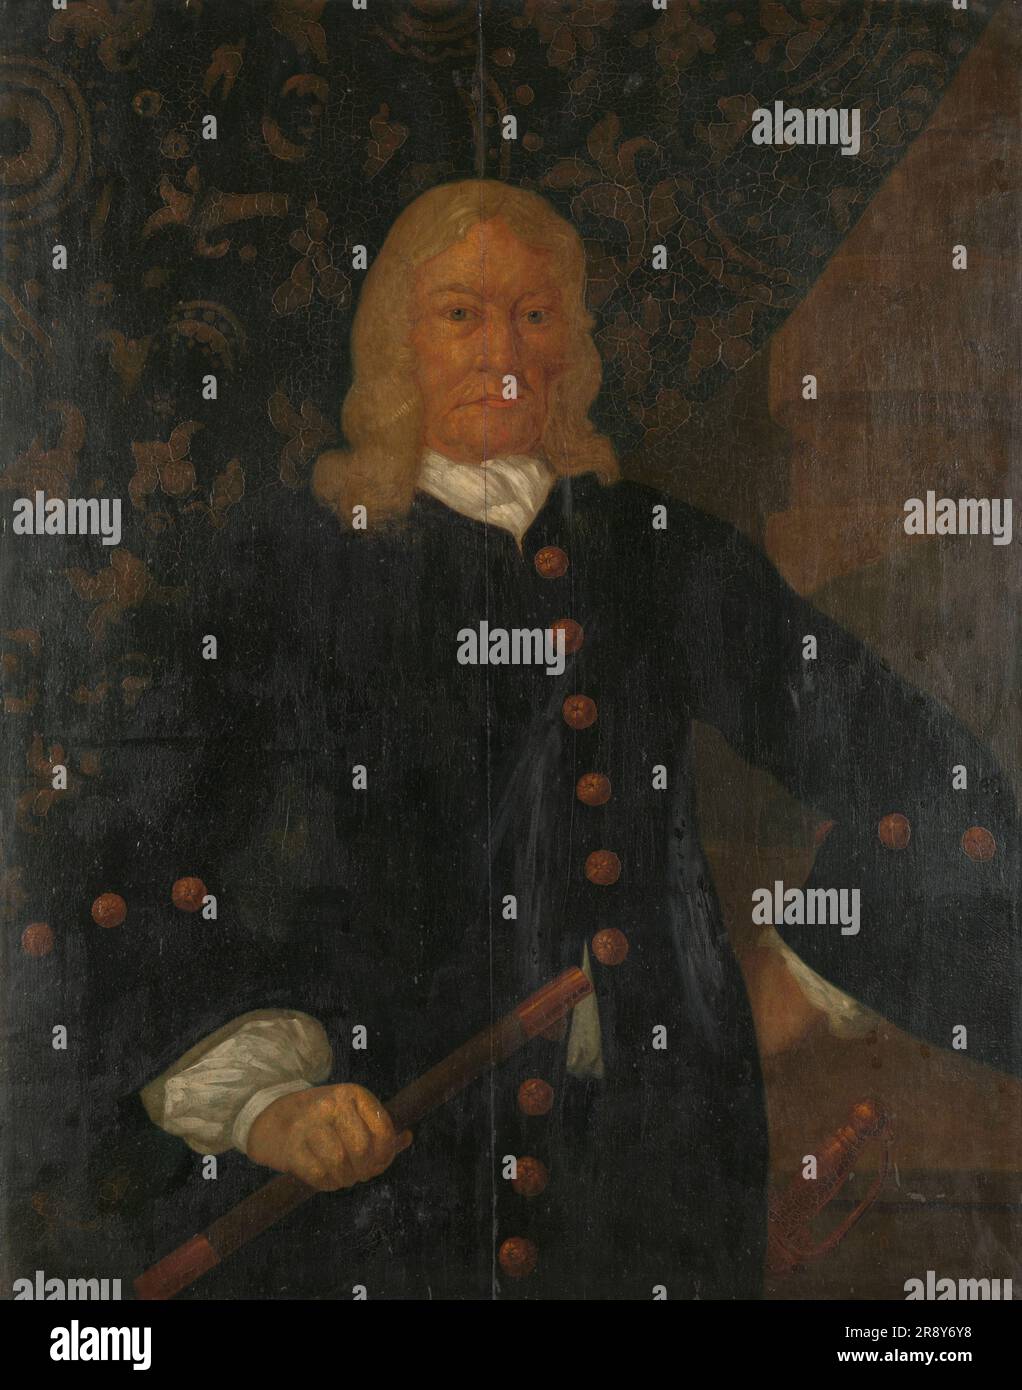 Willem van Outhoorn (1691-1704), 1691-1710. Autre titre(s) : Portrait de Willem van Outhoorn, Gouverneur général des Antilles néerlandaises. Banque D'Images